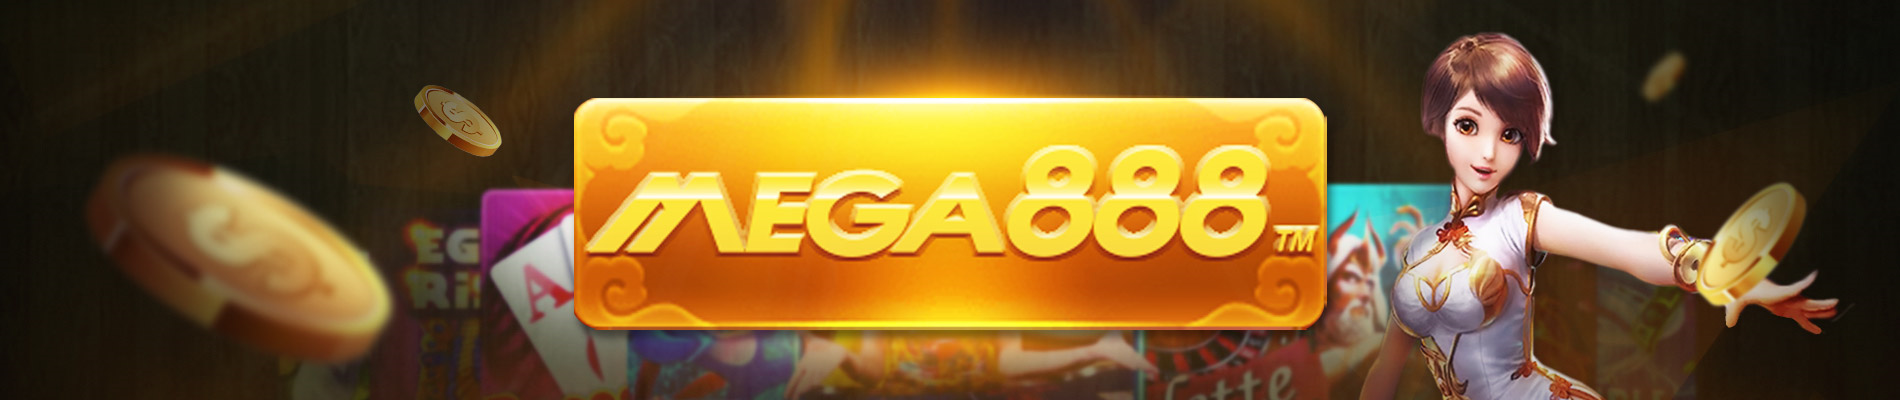 Mega888 Banner